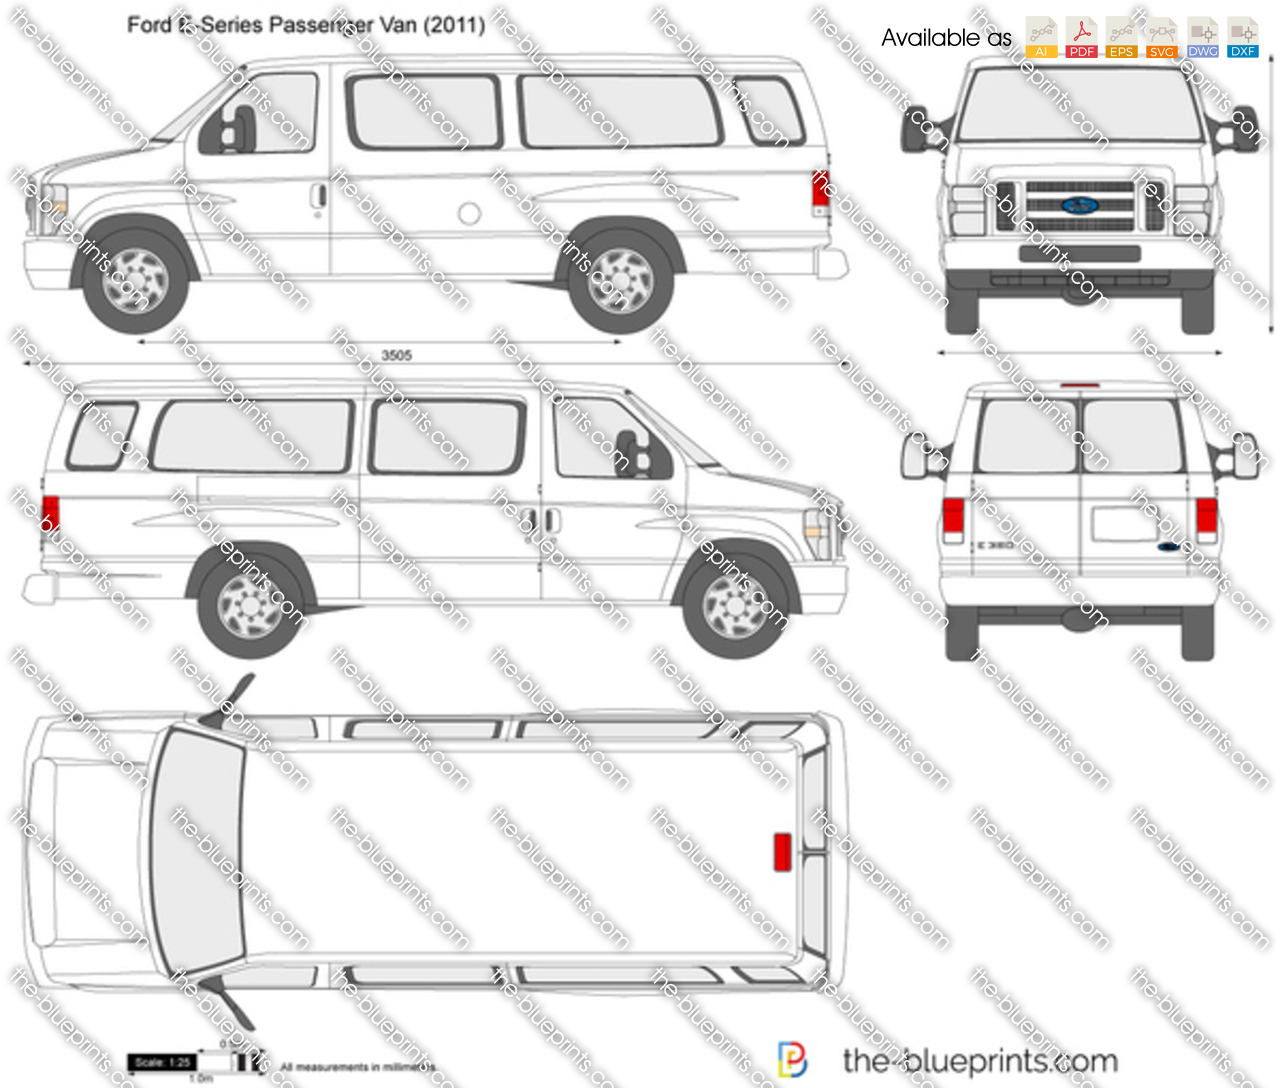 Ford E-Series Passenger Van